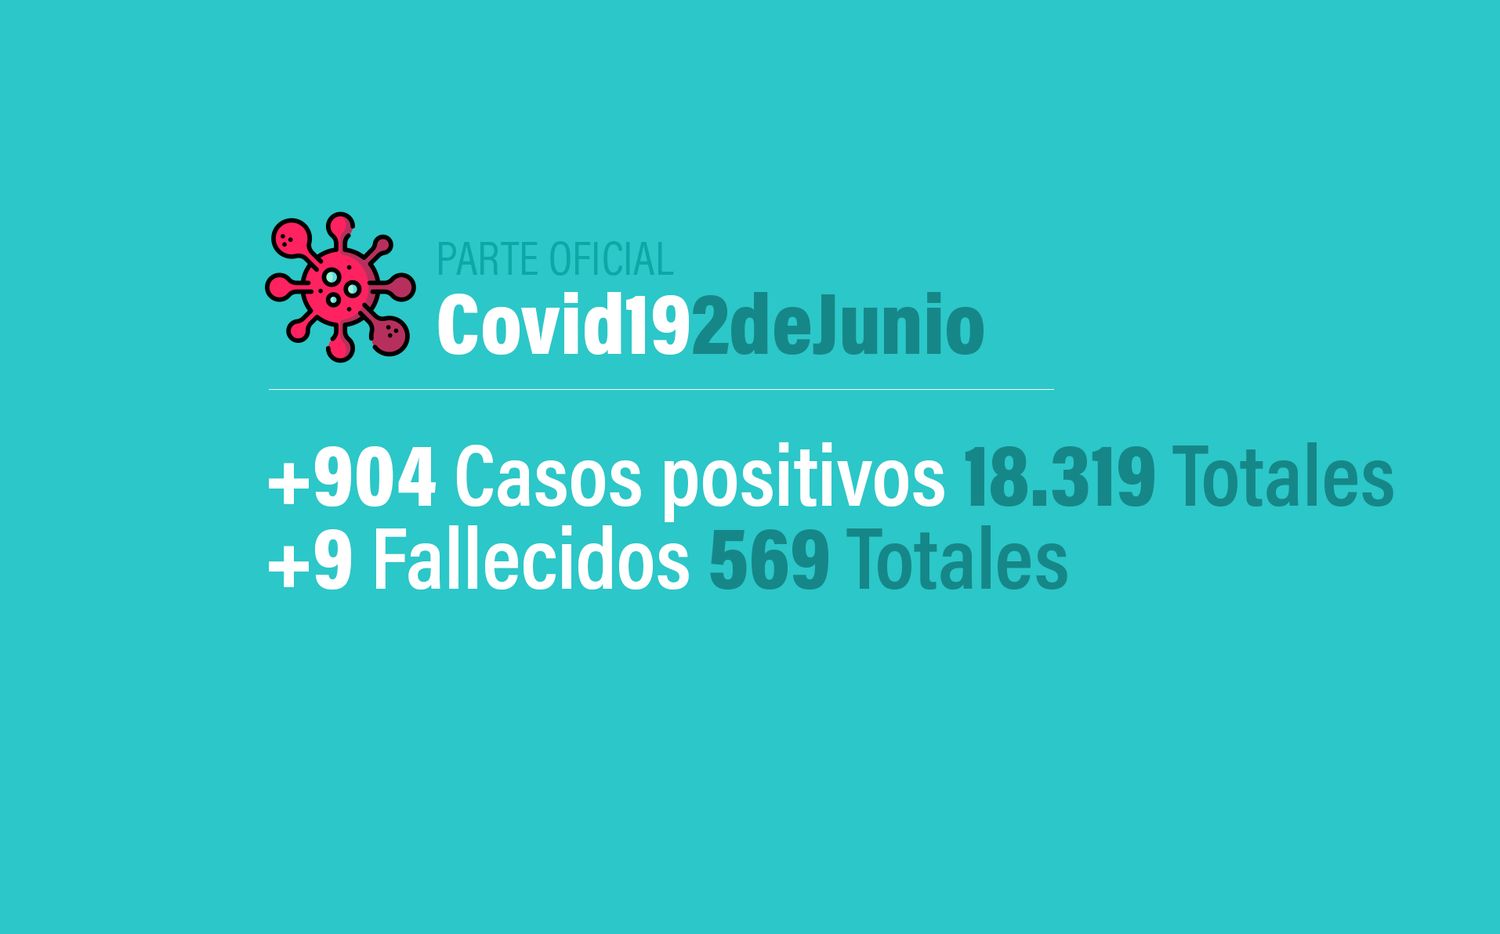 Coronavirus en Argentina: 904 nuevos casos, 18319 confirmados y 569 muertes, al 2 de junio